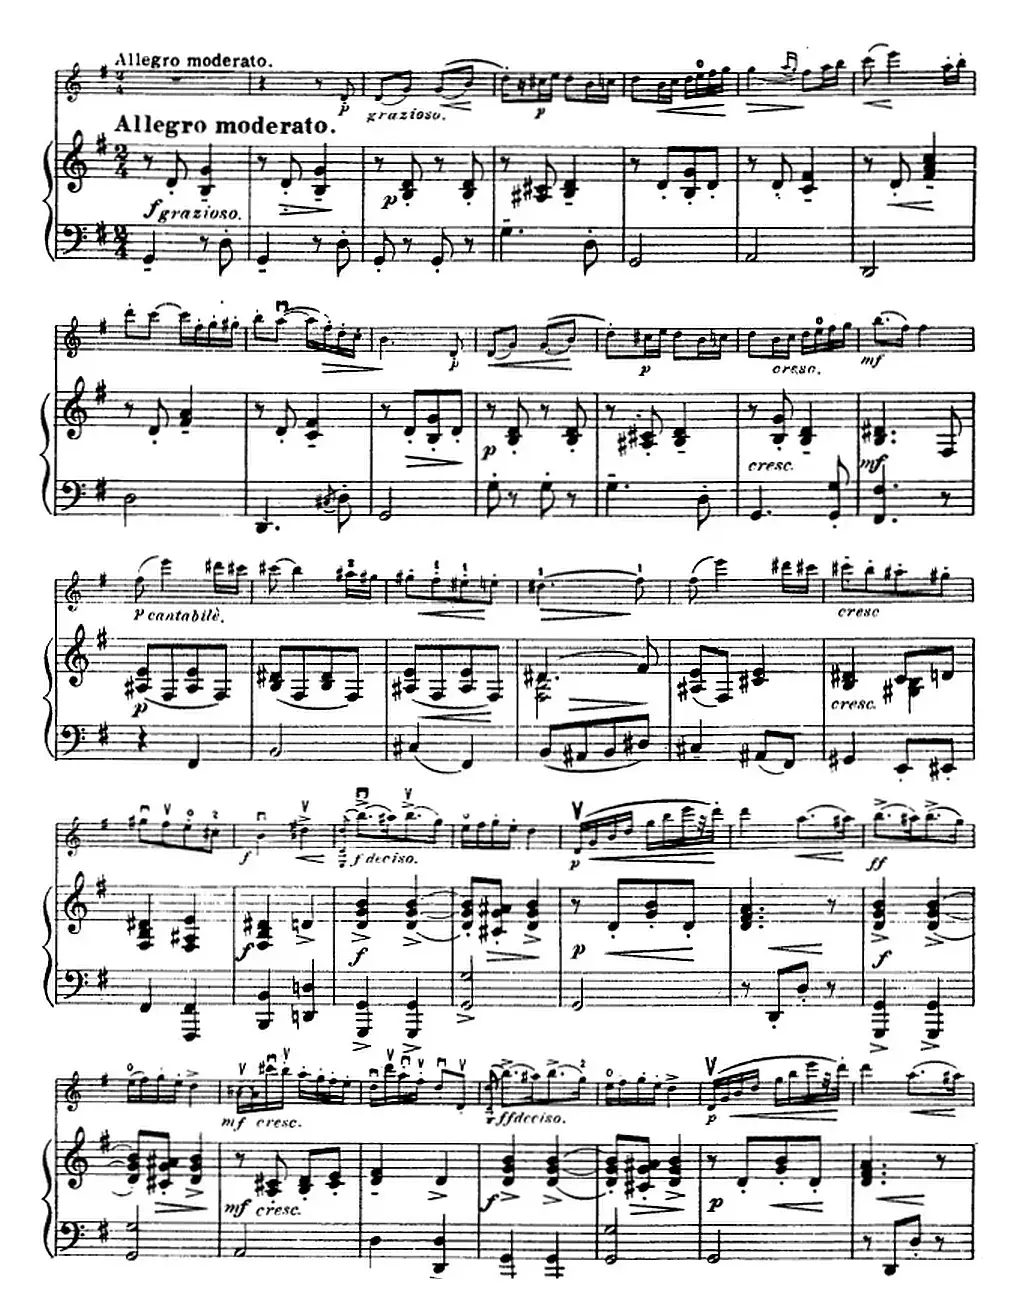 塞茨初级小提琴协奏曲Op.12（g小调学生协奏曲）